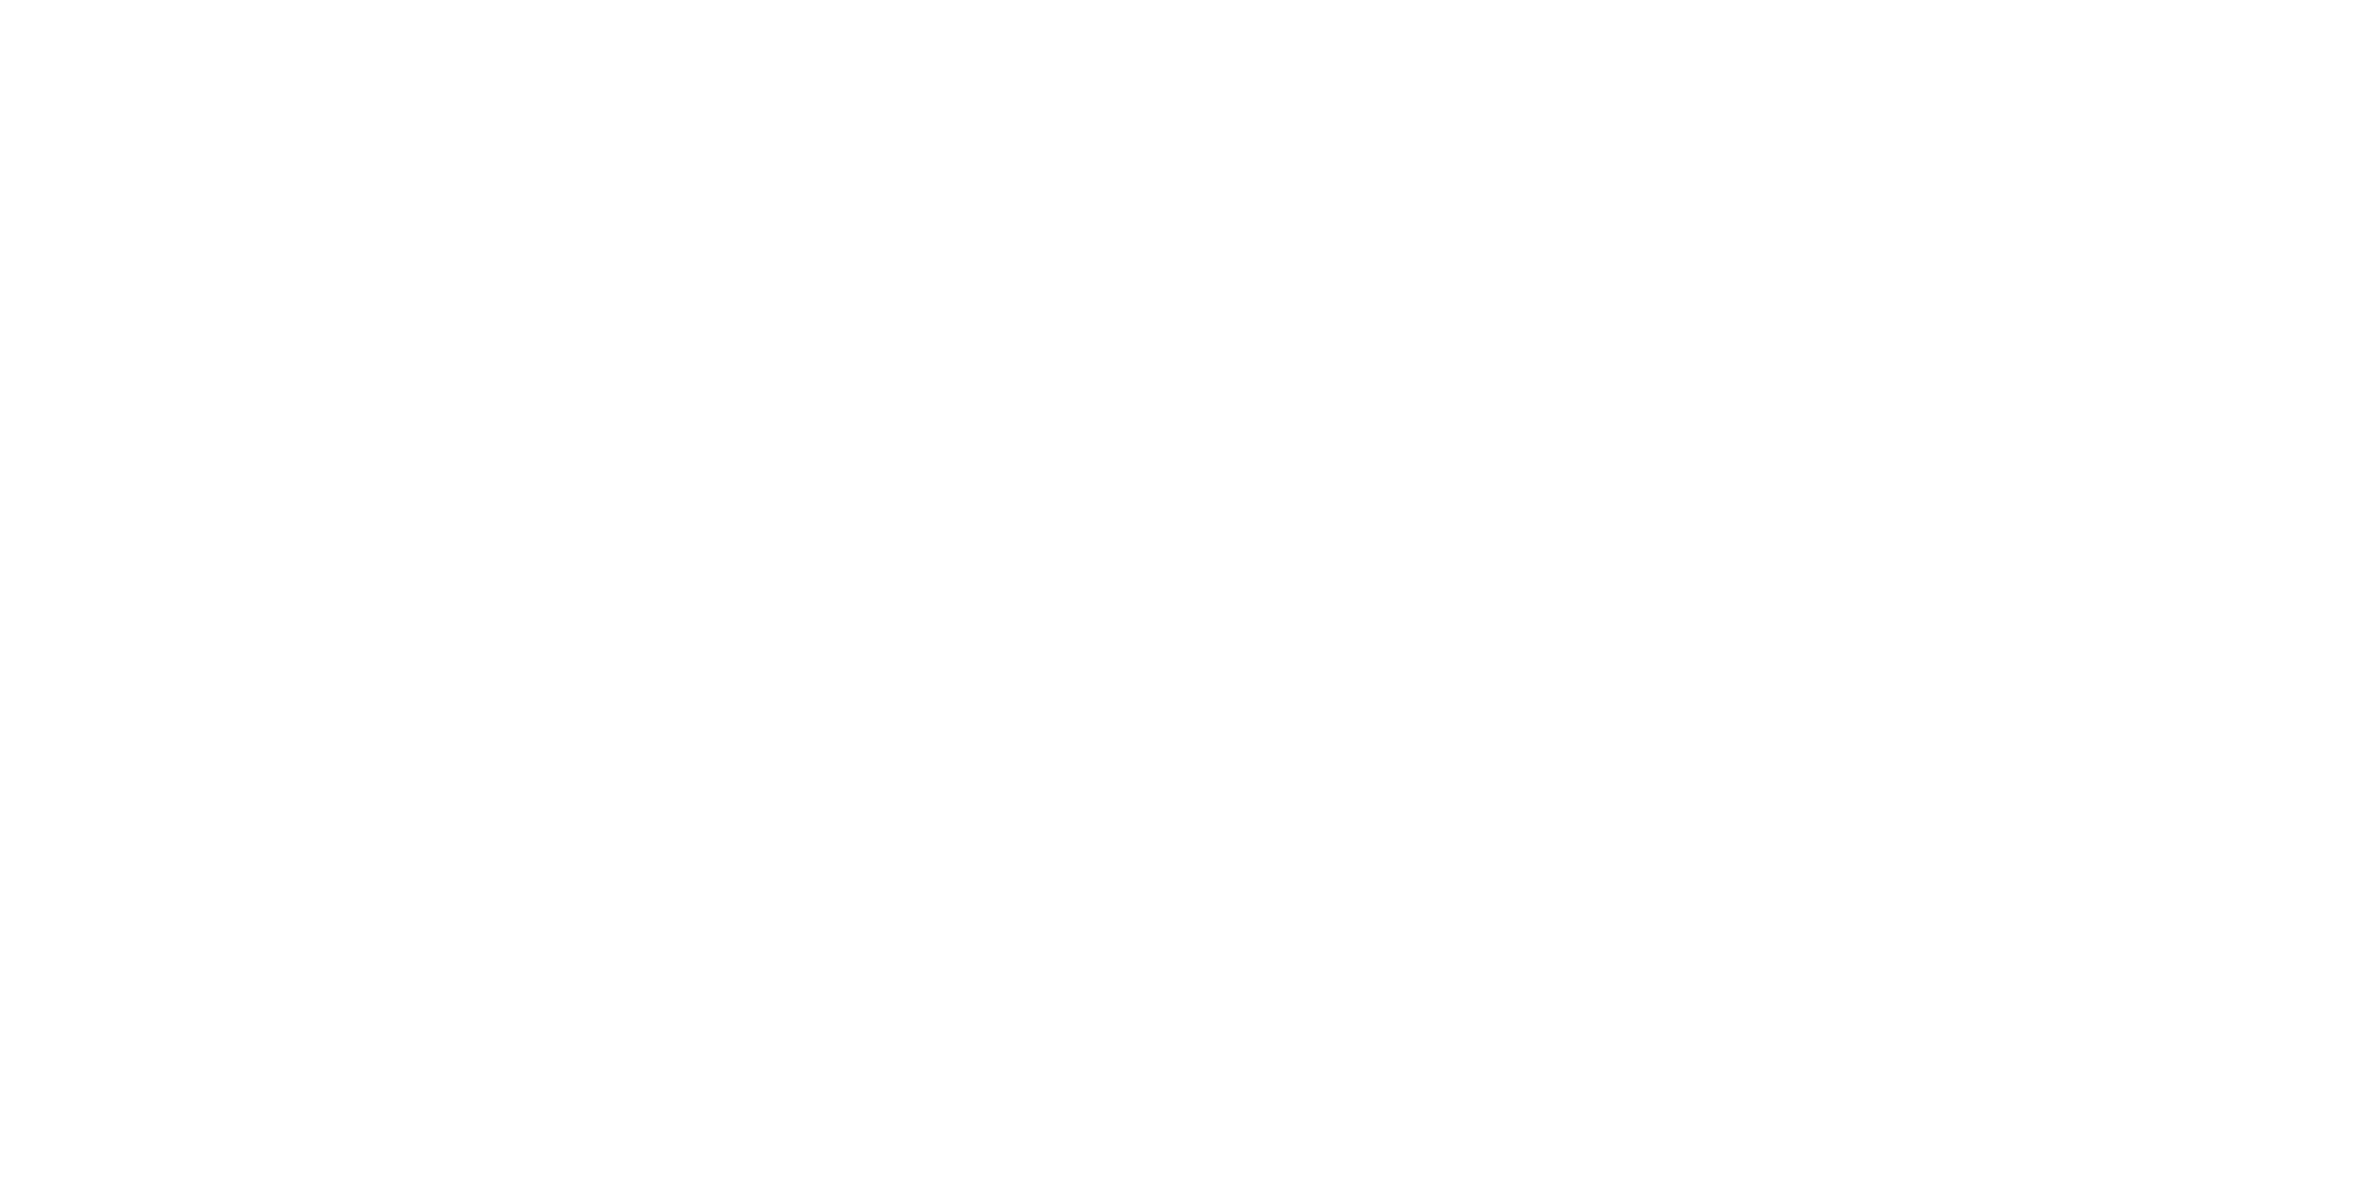 Executive Talents